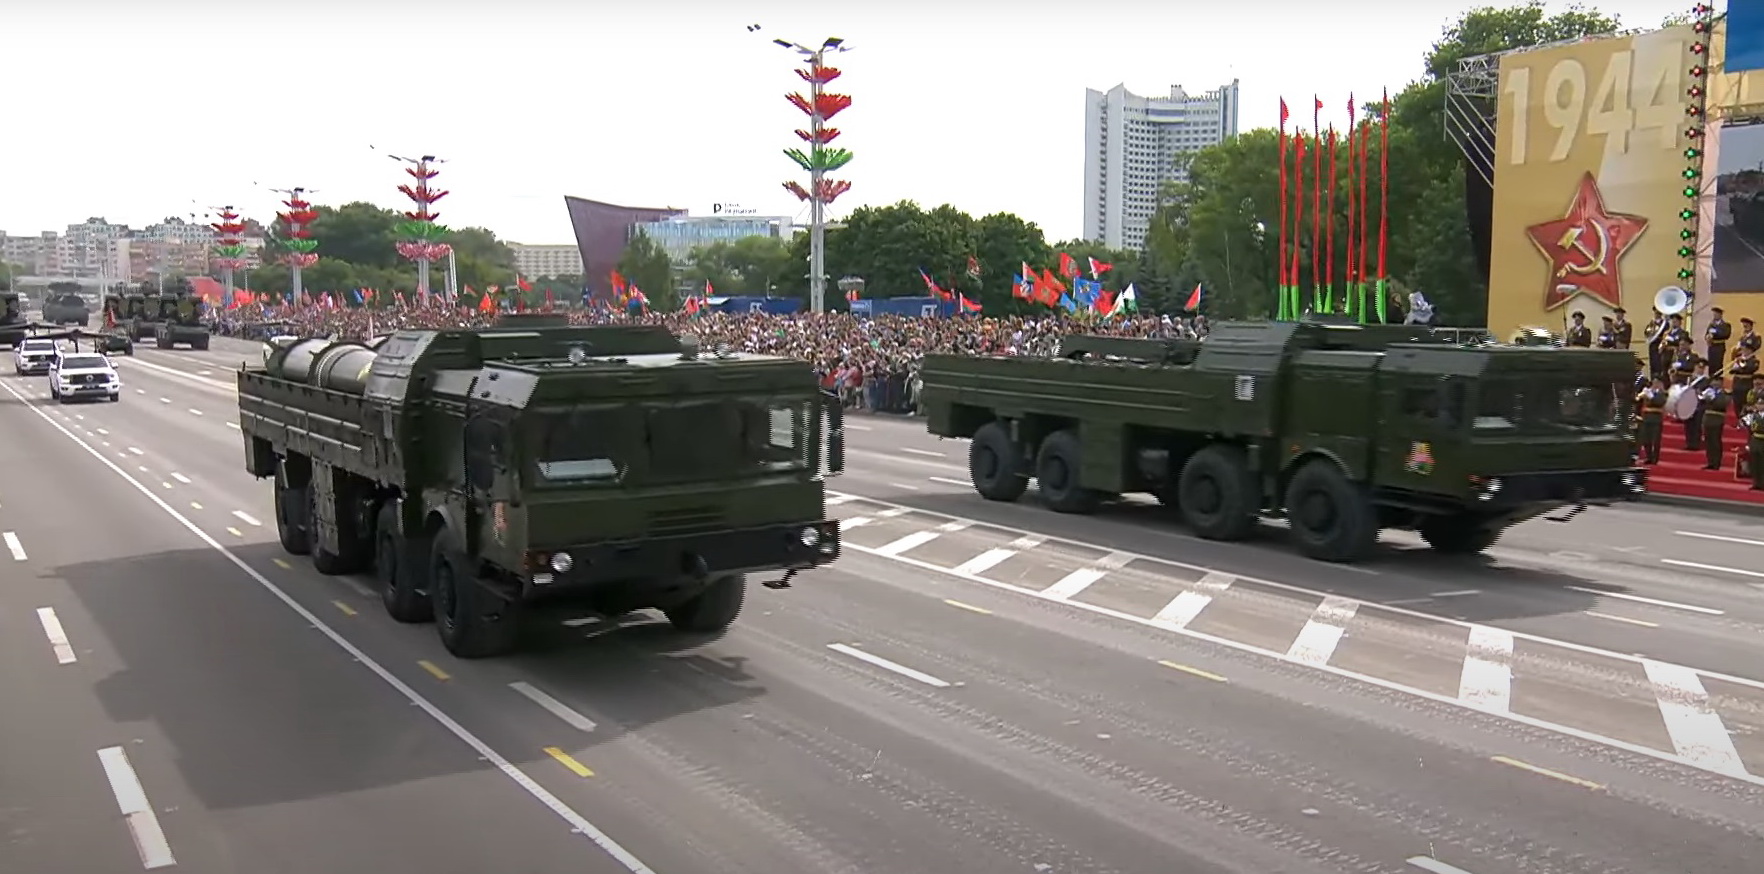 На параде в Минске показали "Искандеры" со знаками радиационной опасности